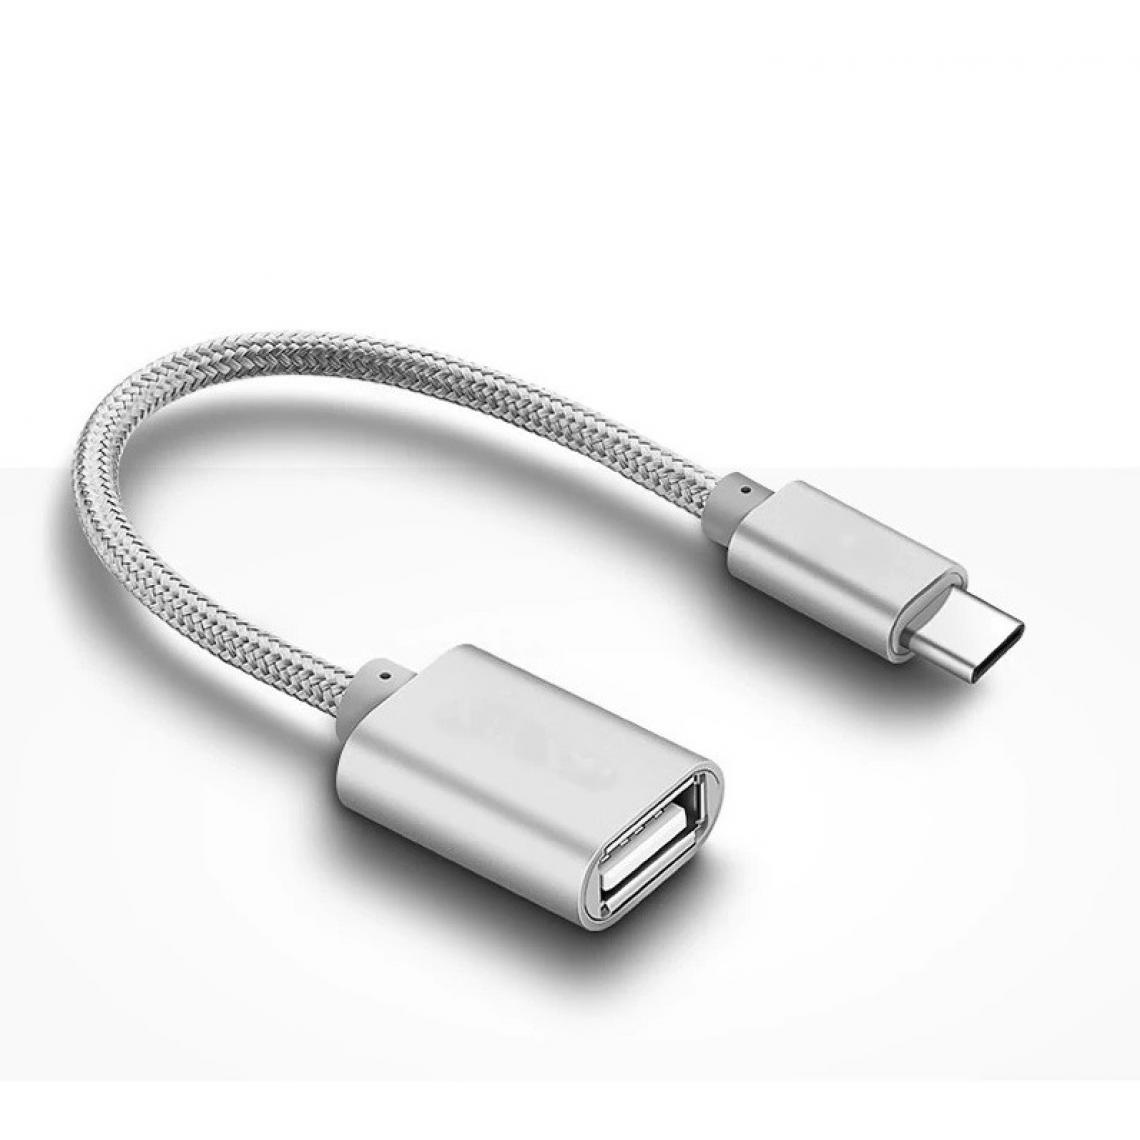 Shot - Adaptateur Type C/USB pour HUAWEI Nova Smartphone & MAC USB-C Clef (ARGENT) - Autres accessoires smartphone